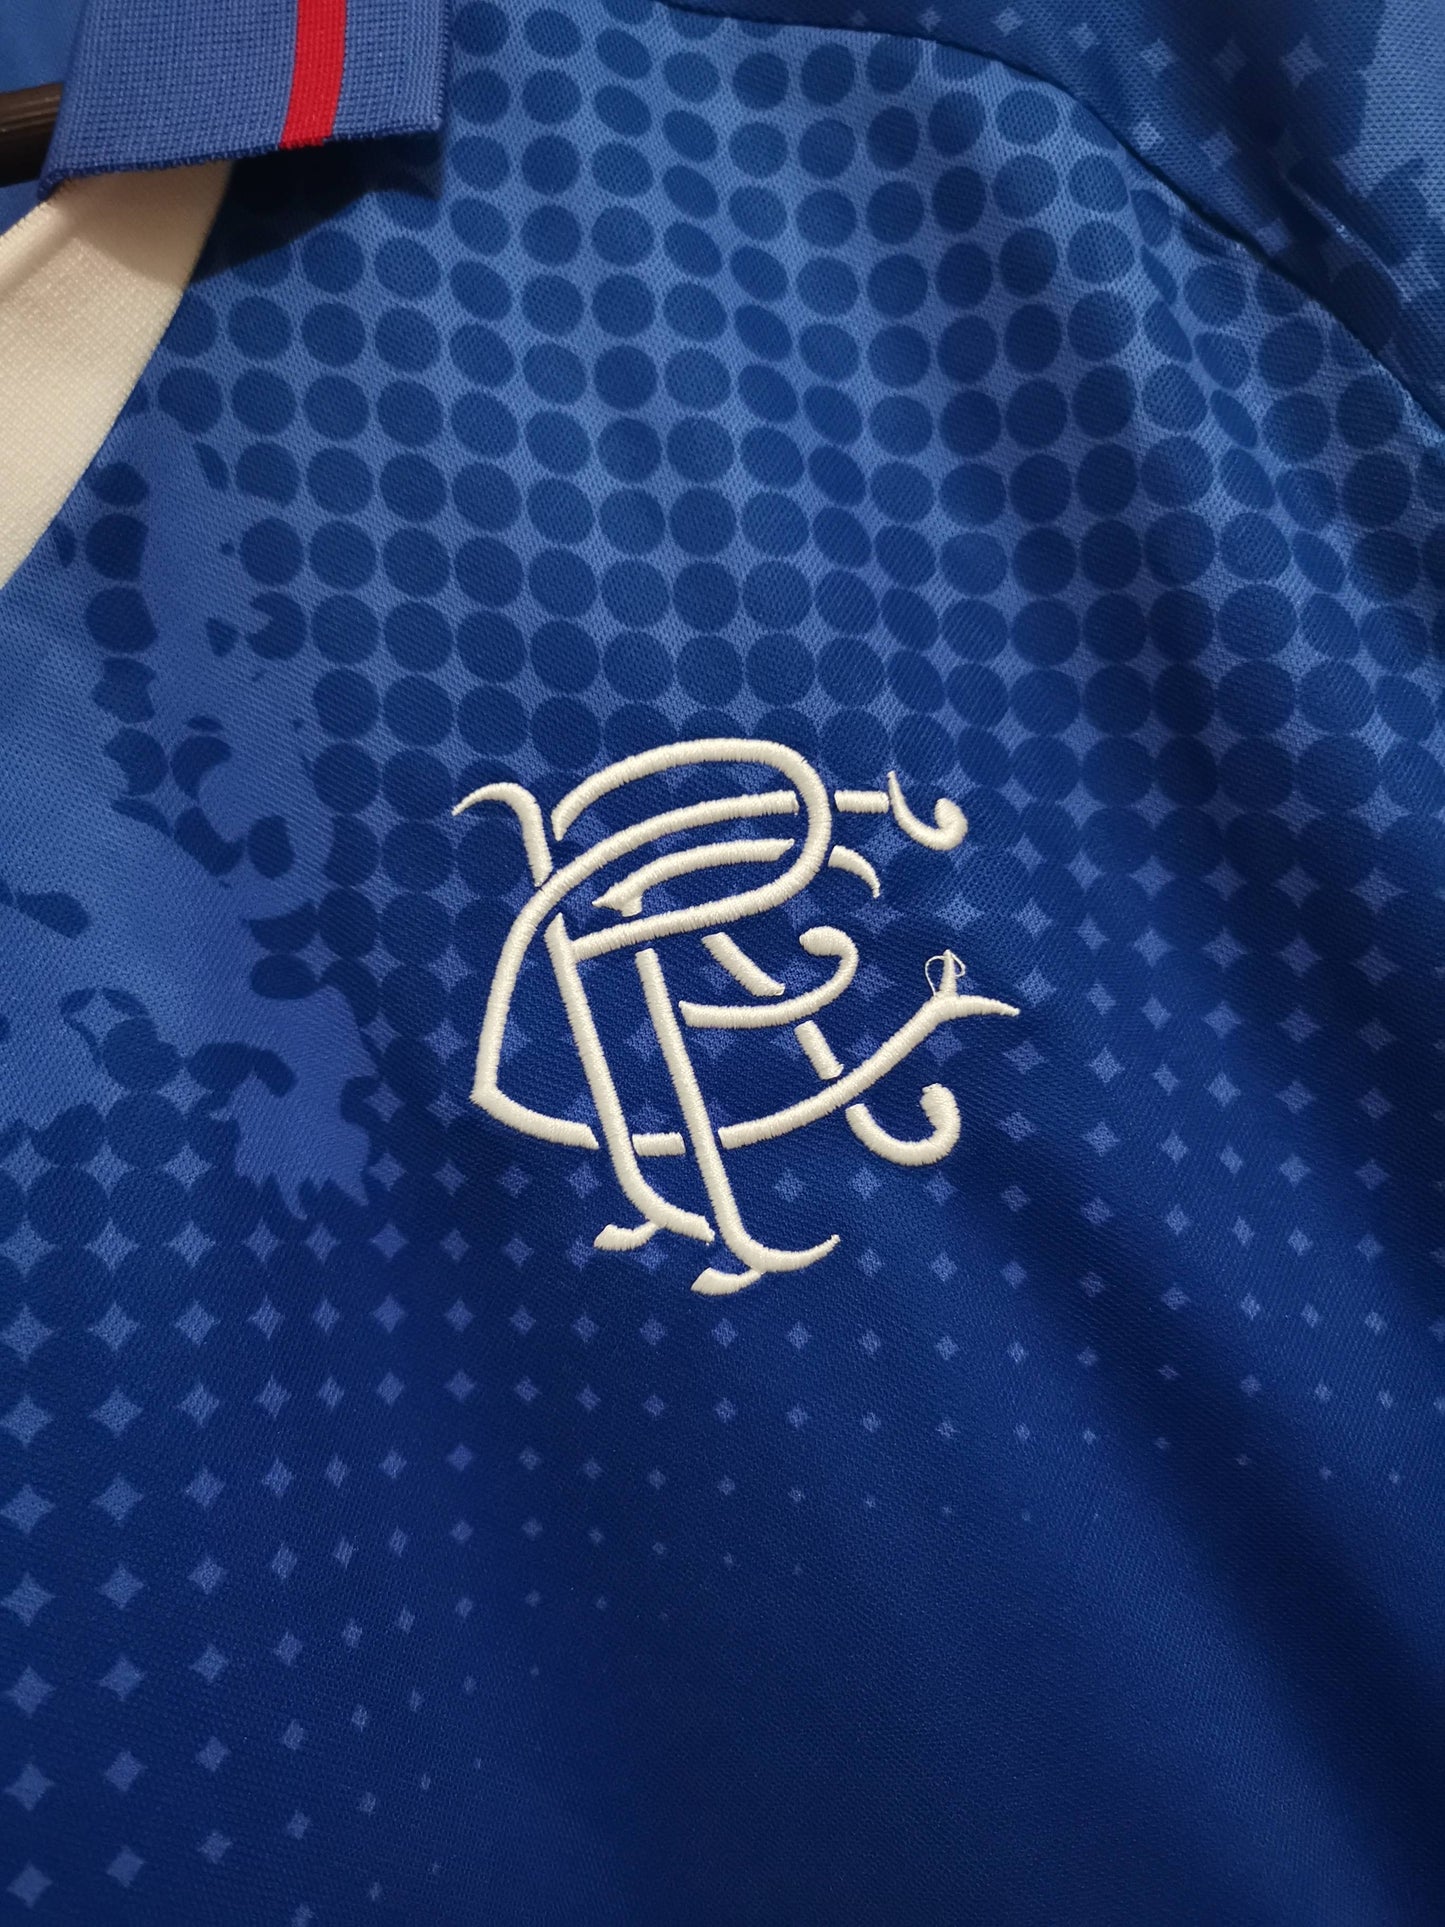 Rangers 02-03 Home Shirt